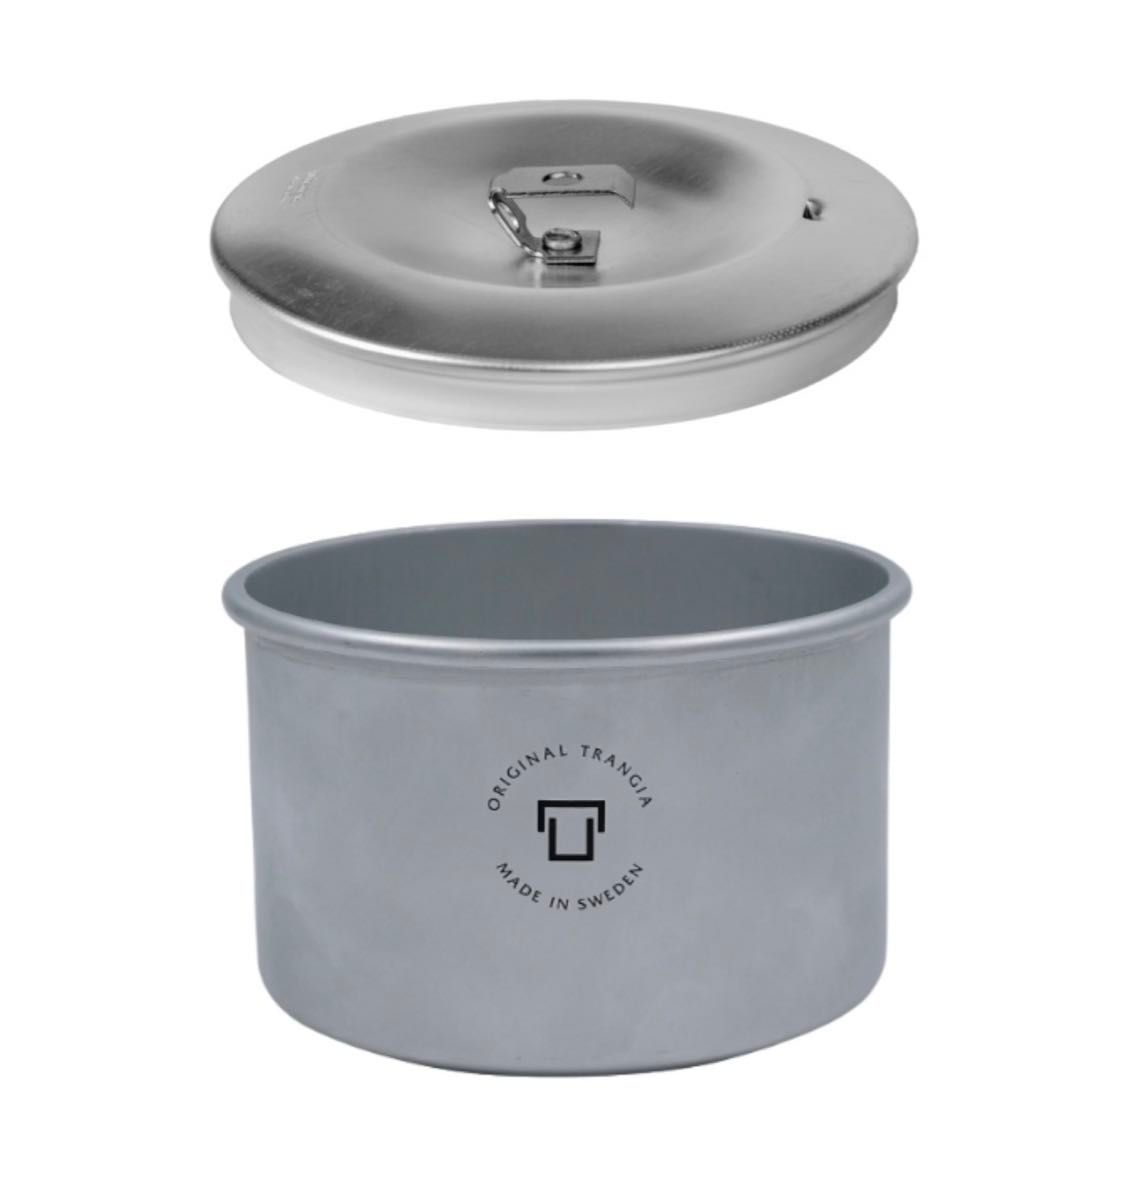 新商品 Trangia Pot Micro 0.5L ステンレスリッド セット トランギア